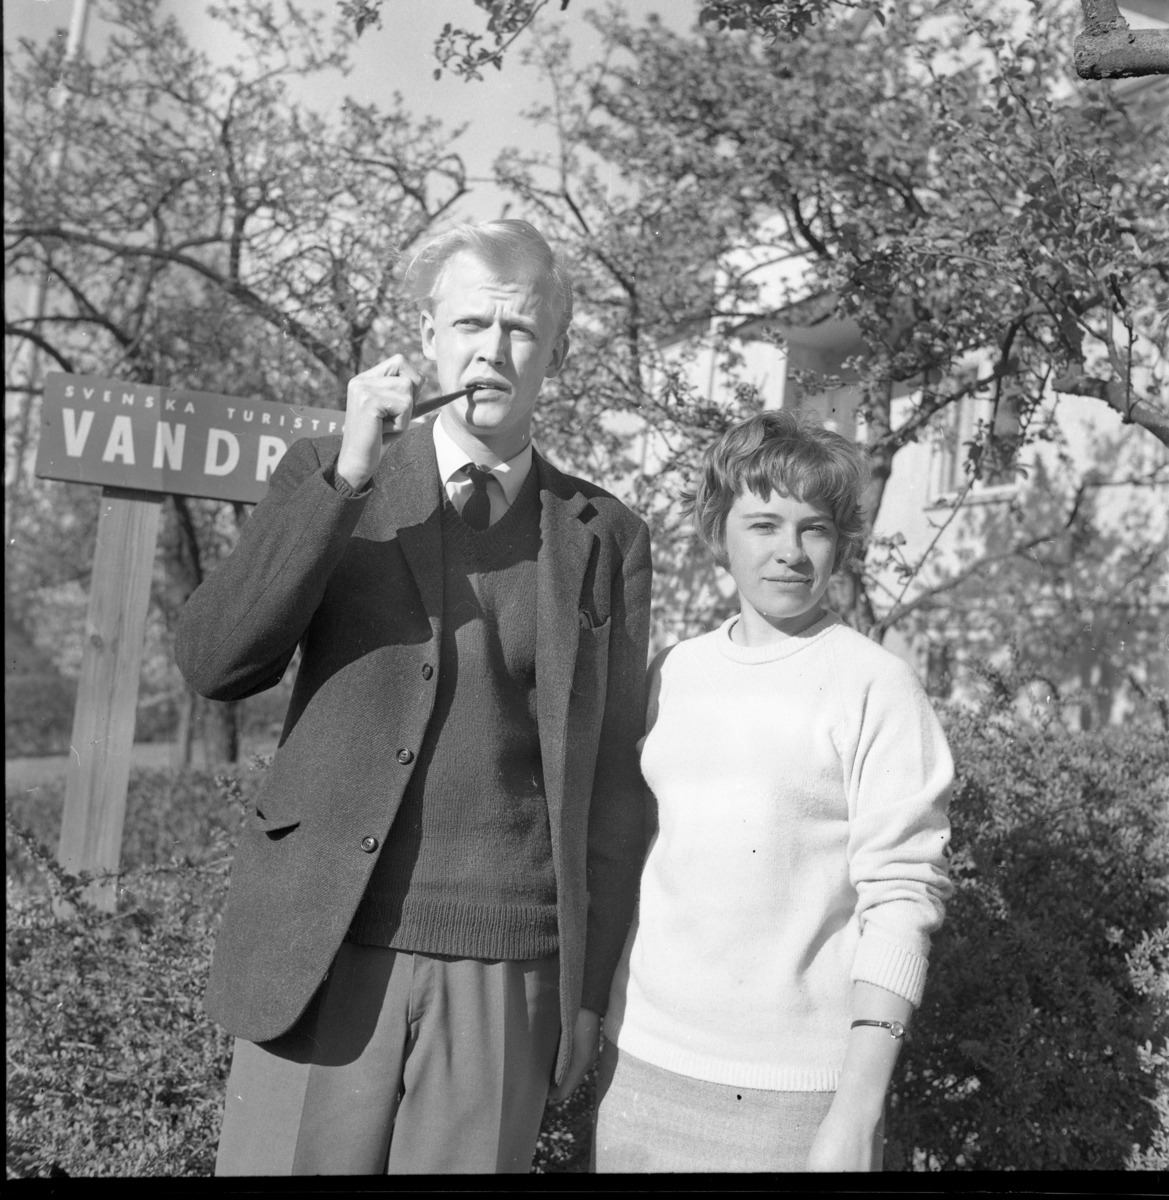 Vandrarhemmets värdar 1964. Oidentifierad man med pipa i munnen, kvinnan heter sannolikt Margareta Nyberg.